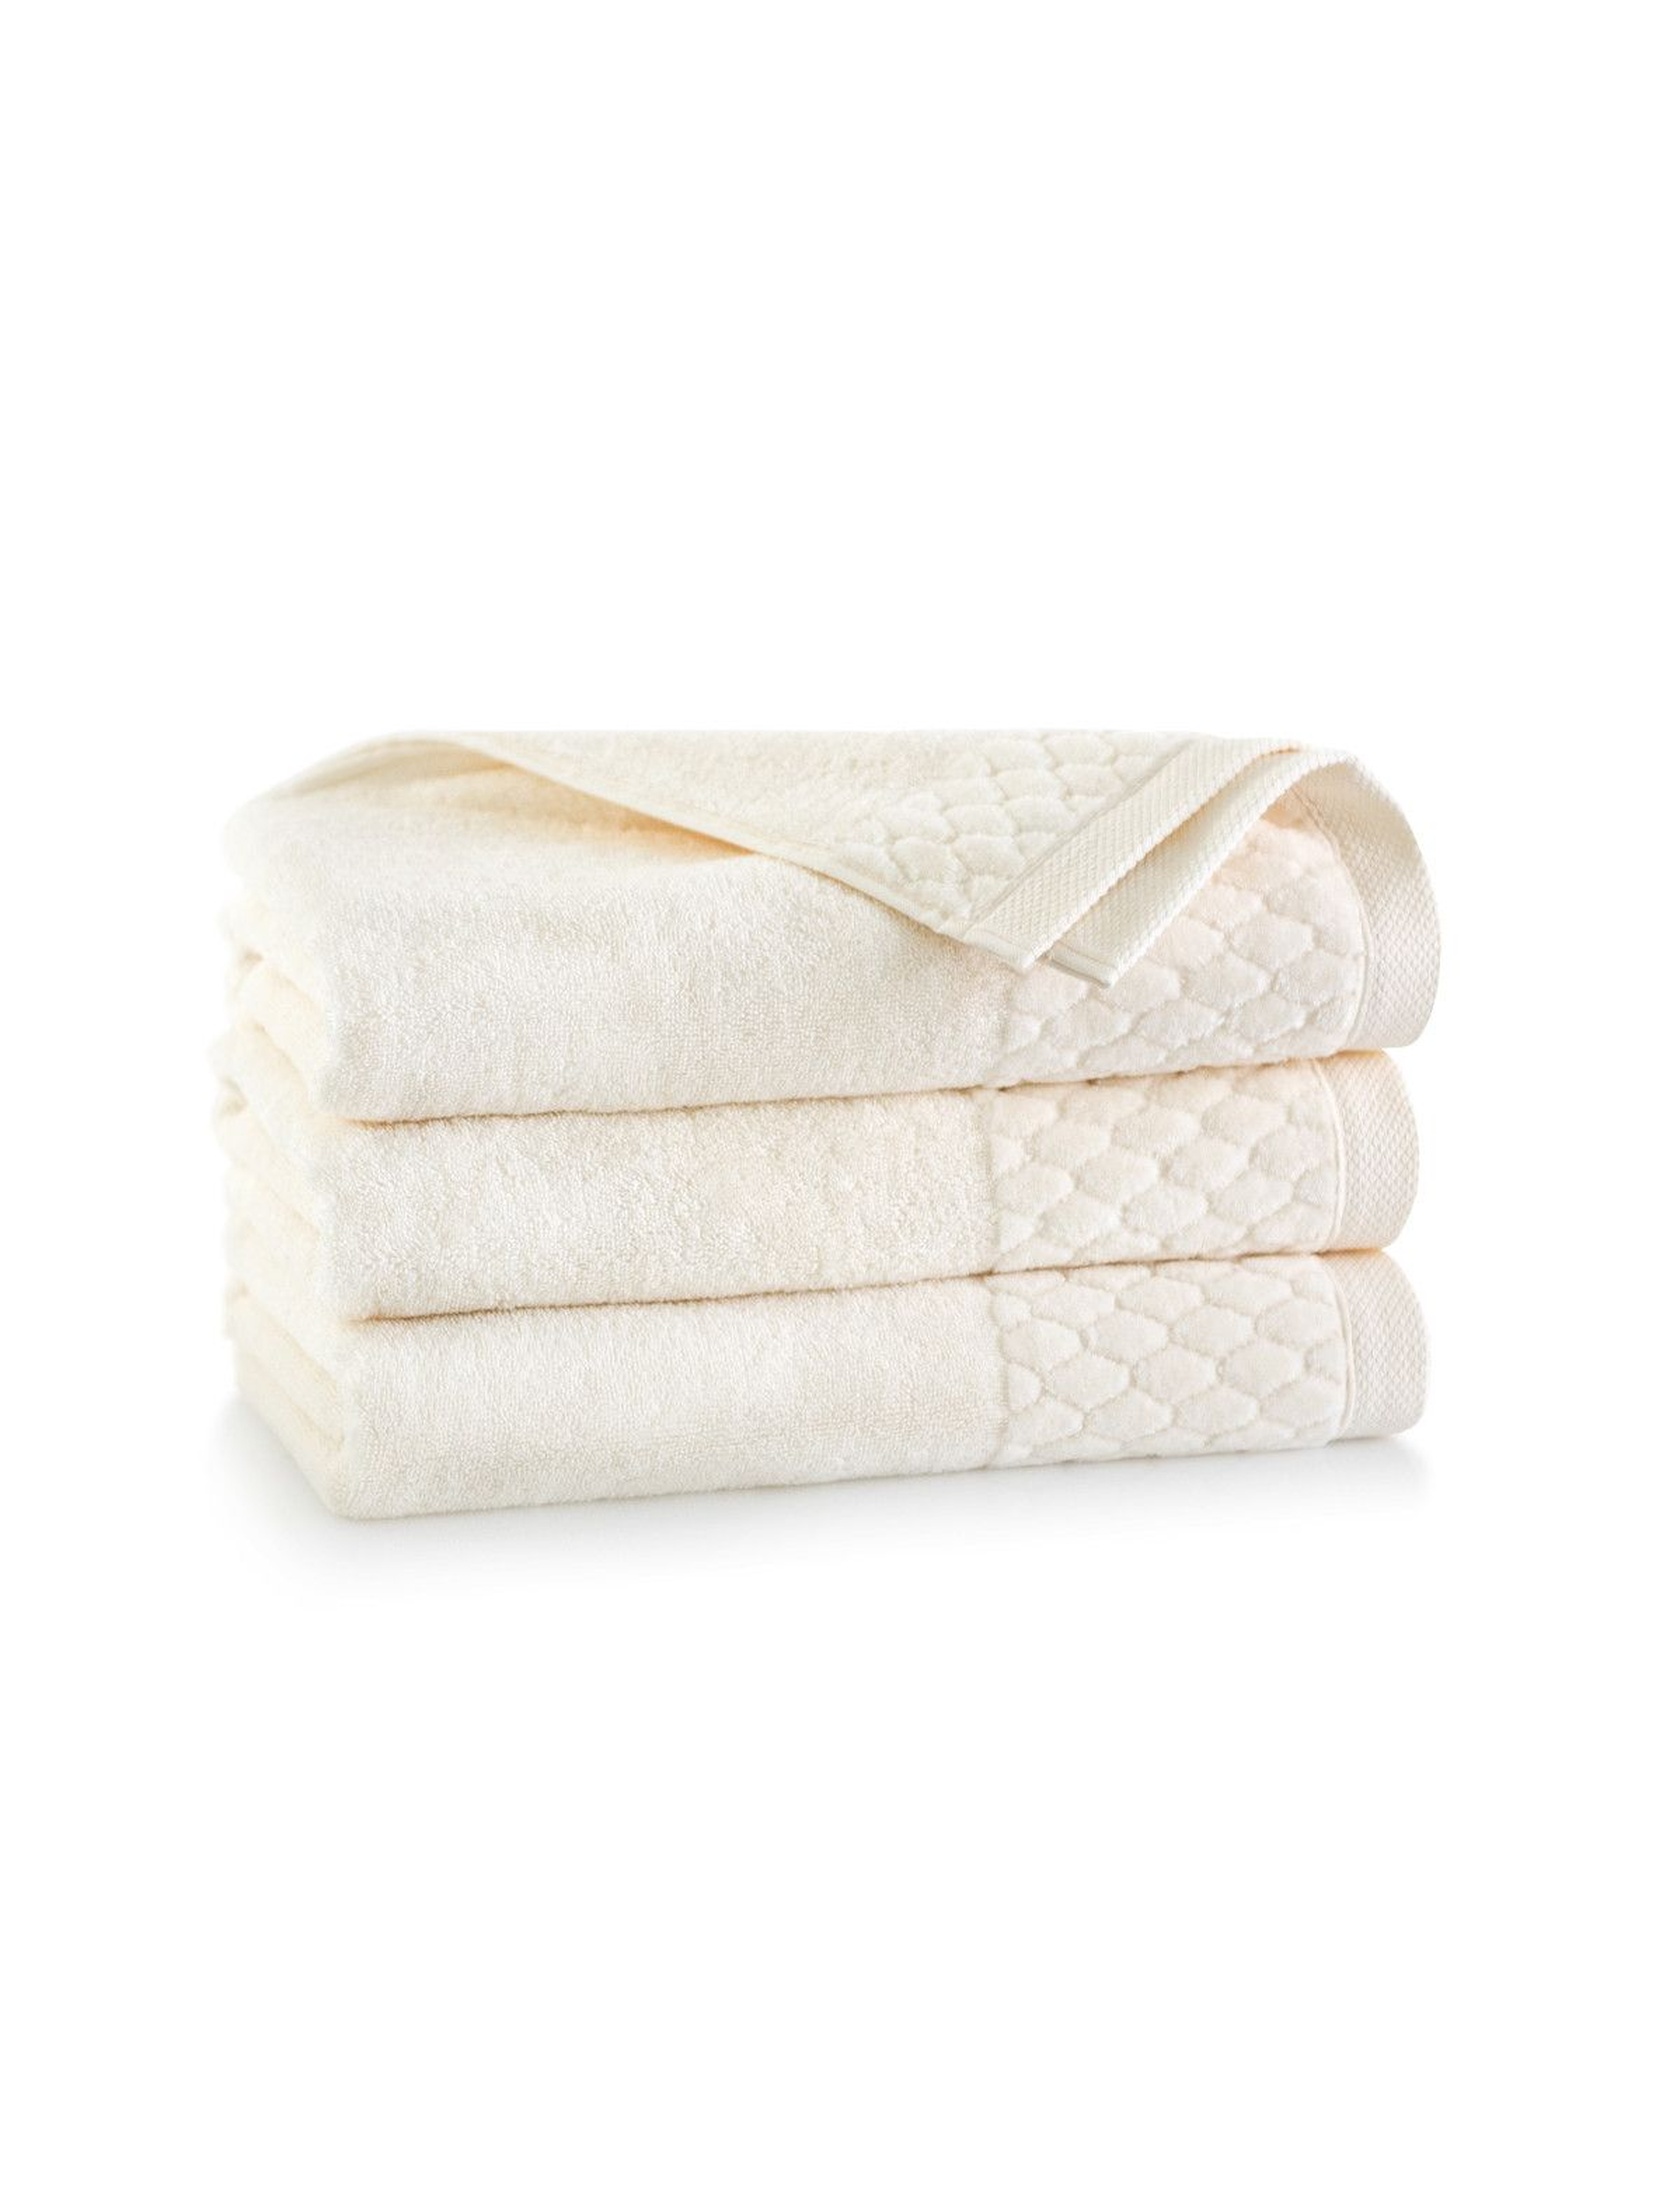 Ręczniki antybakteryjne Carlo z bawełny egipskiej kremowy - 2pack 30x50cm